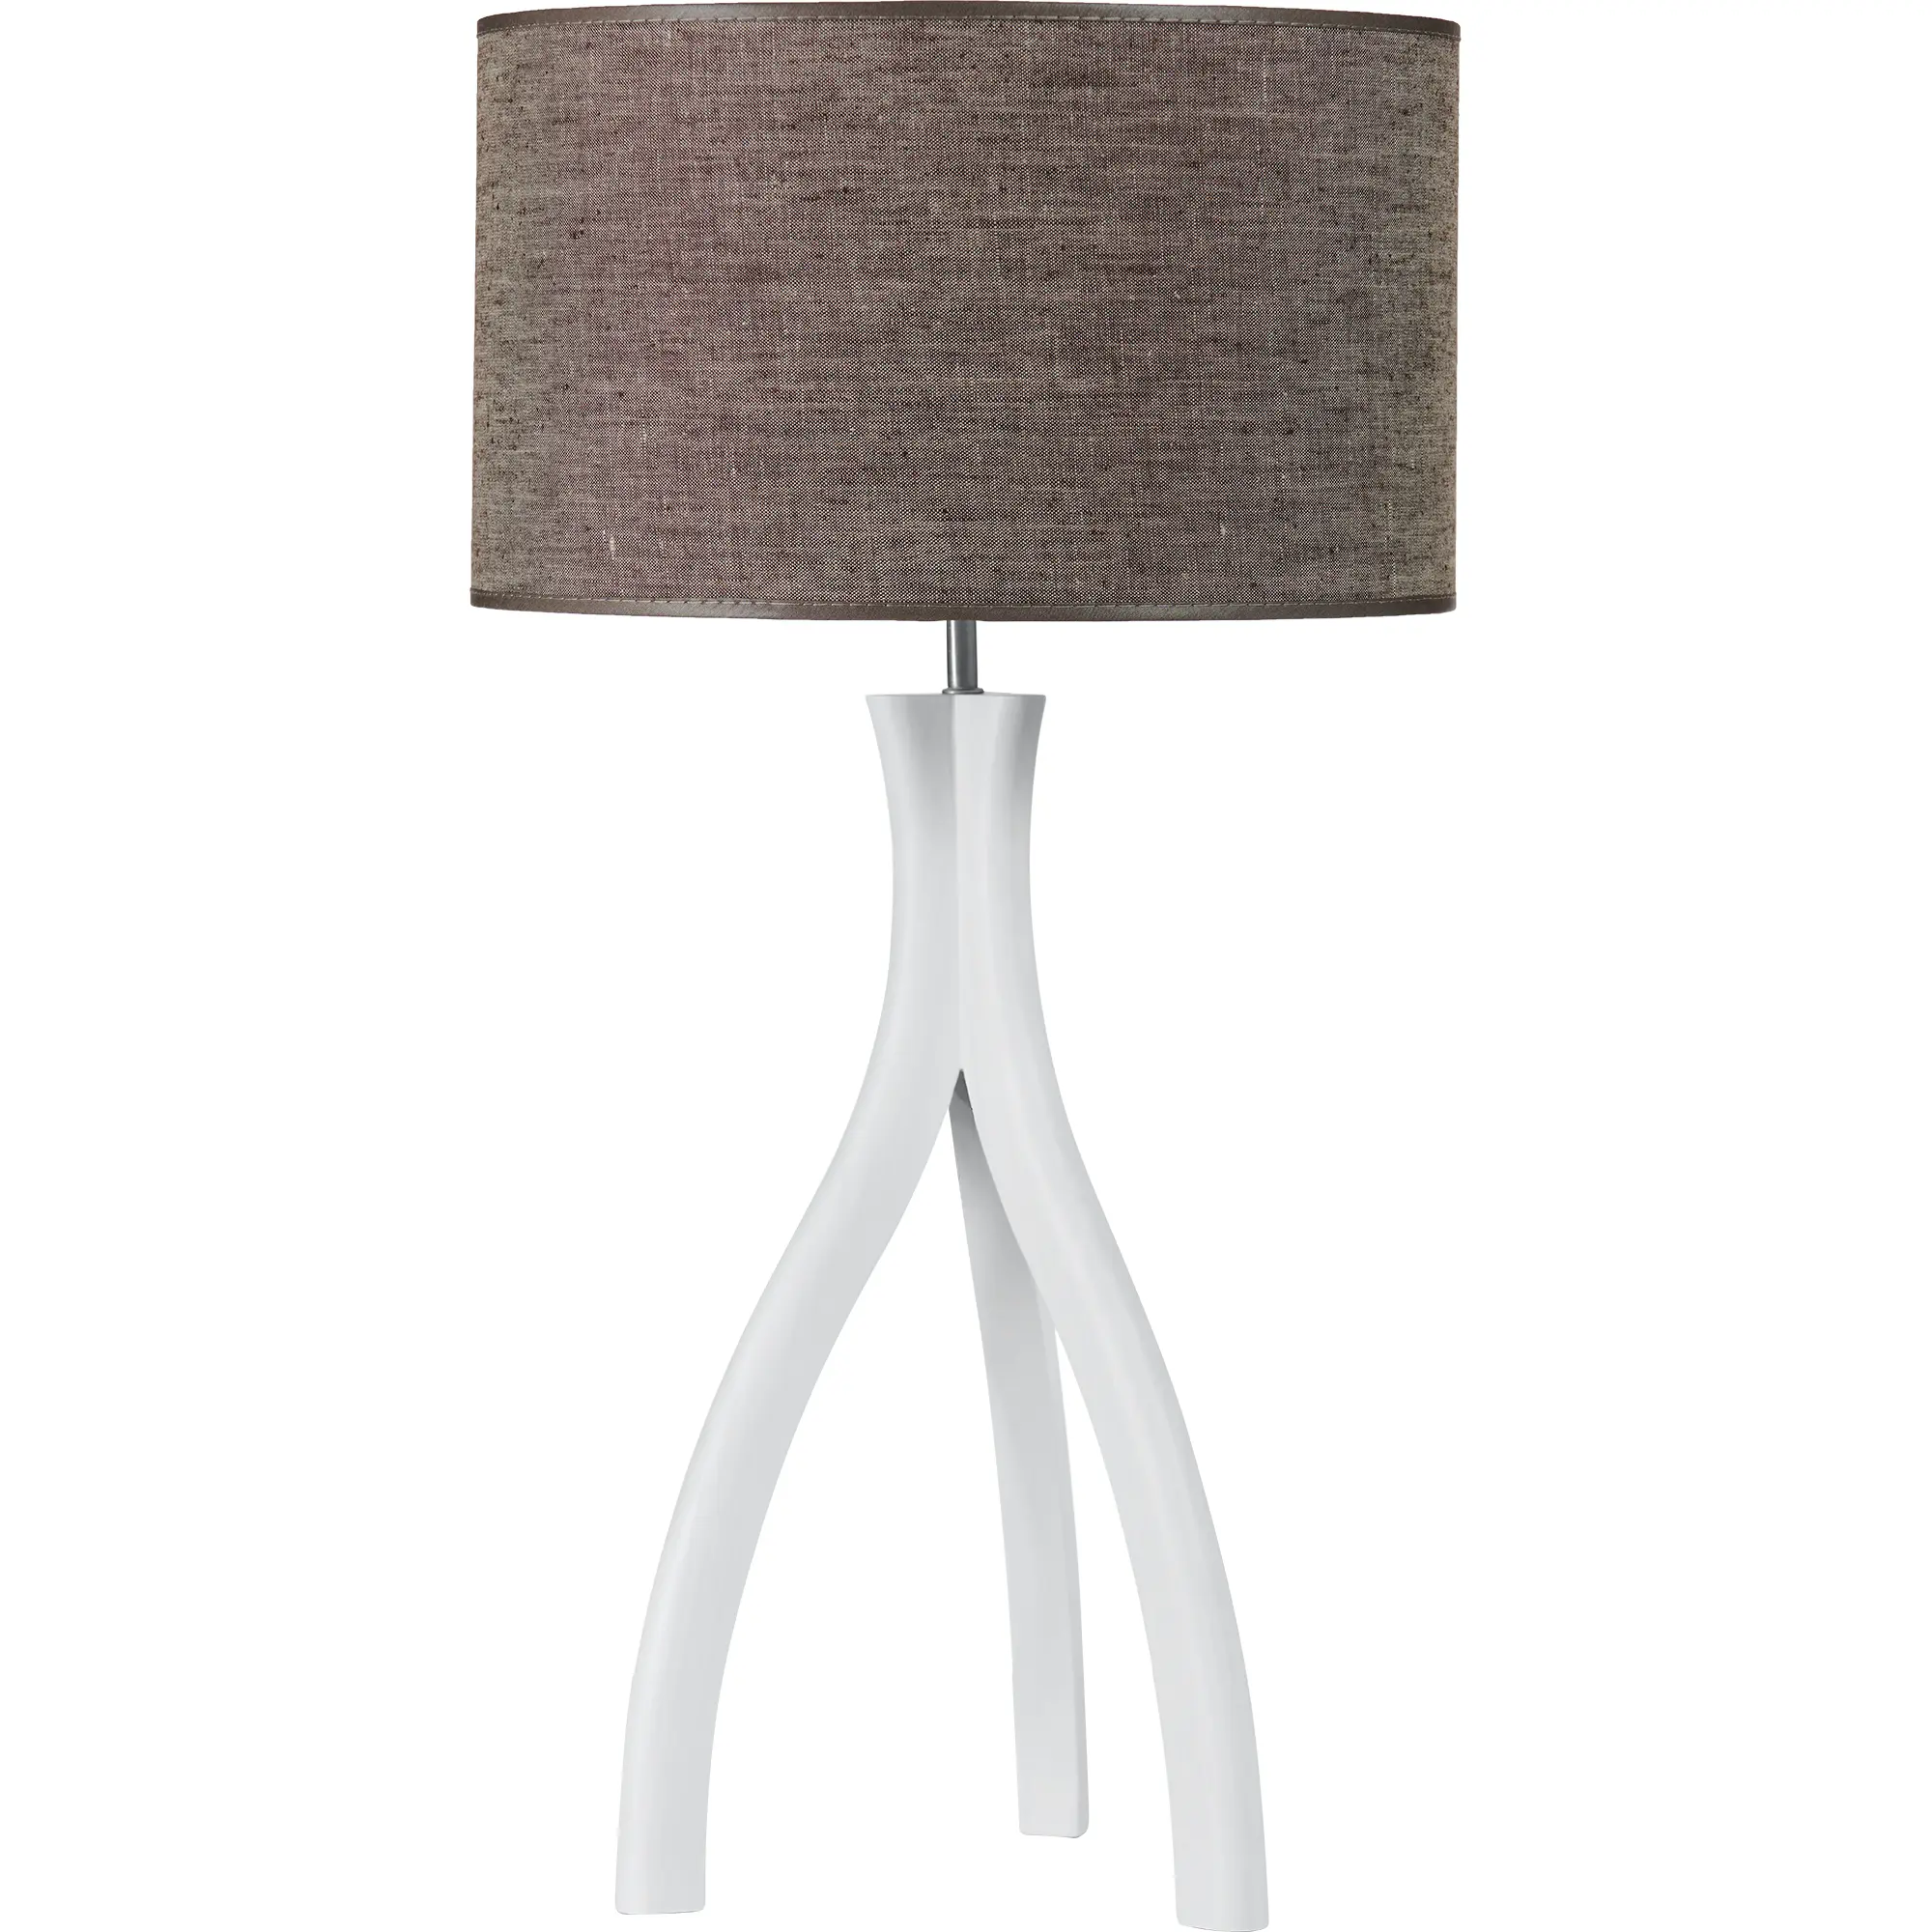 Holz-Tischlampe Skandinavia aus Esche in weiß, grau, braun